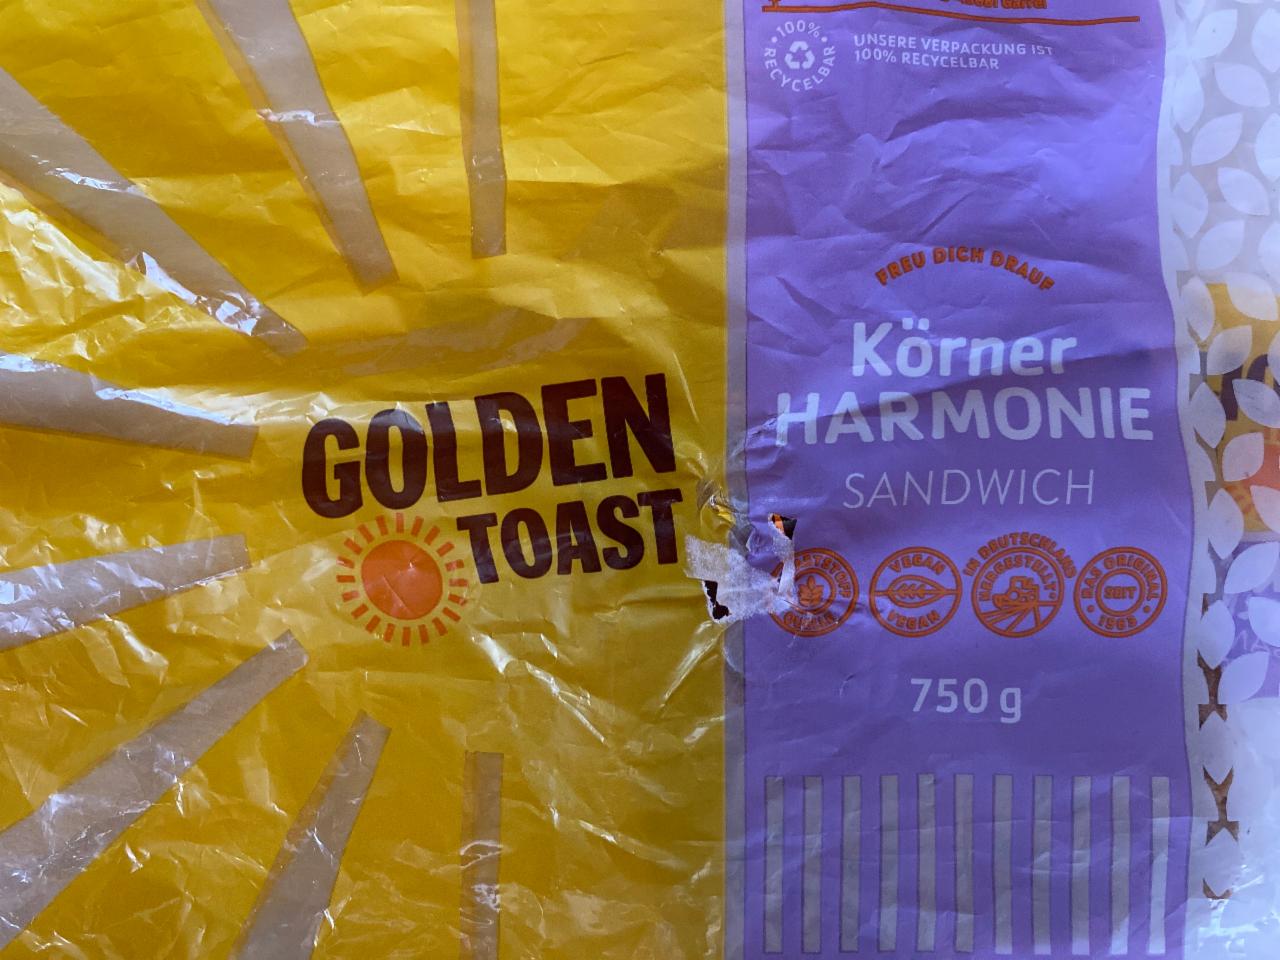 Fotografie - Körner Harmonie Sandwich Golden Toast